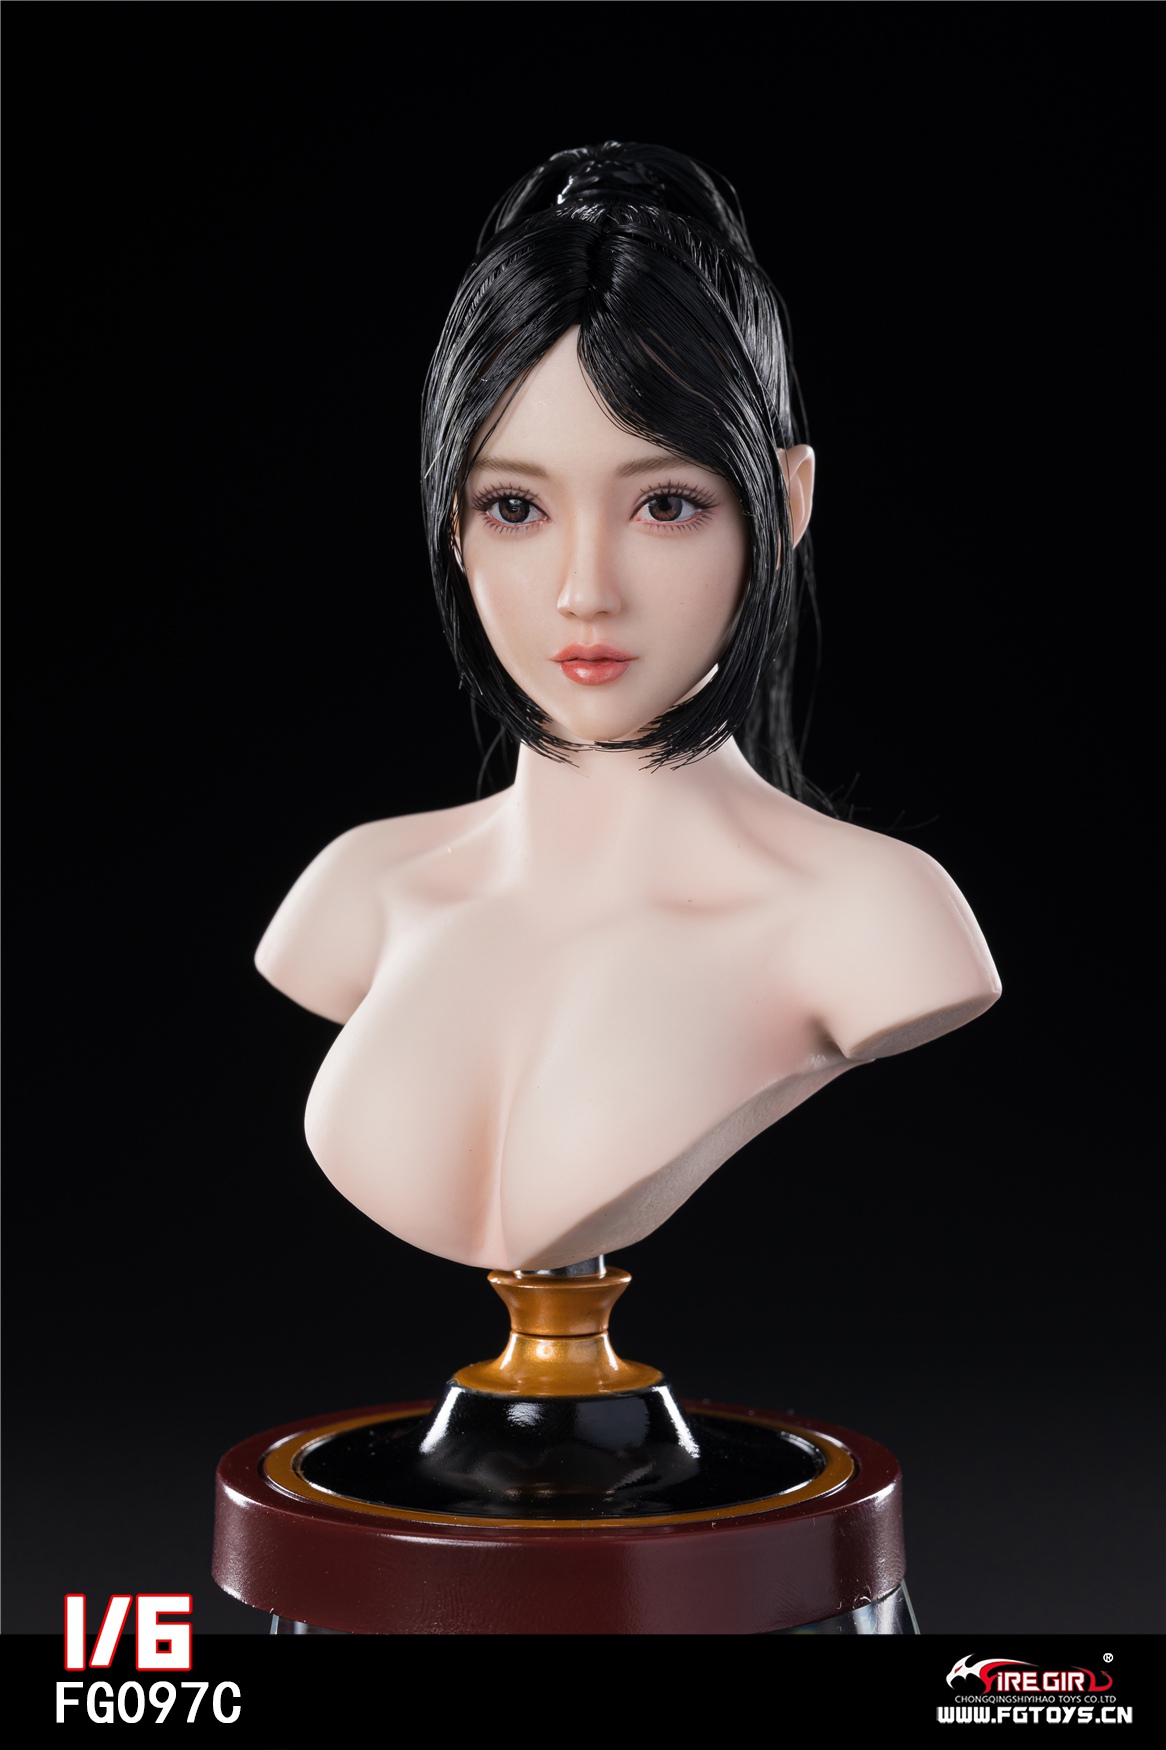 firegirl - NEW PRODUCT: Fire Girl Toys: Asian Girl Head Sculpture (FG097A/FG097B/FG097C) 1749